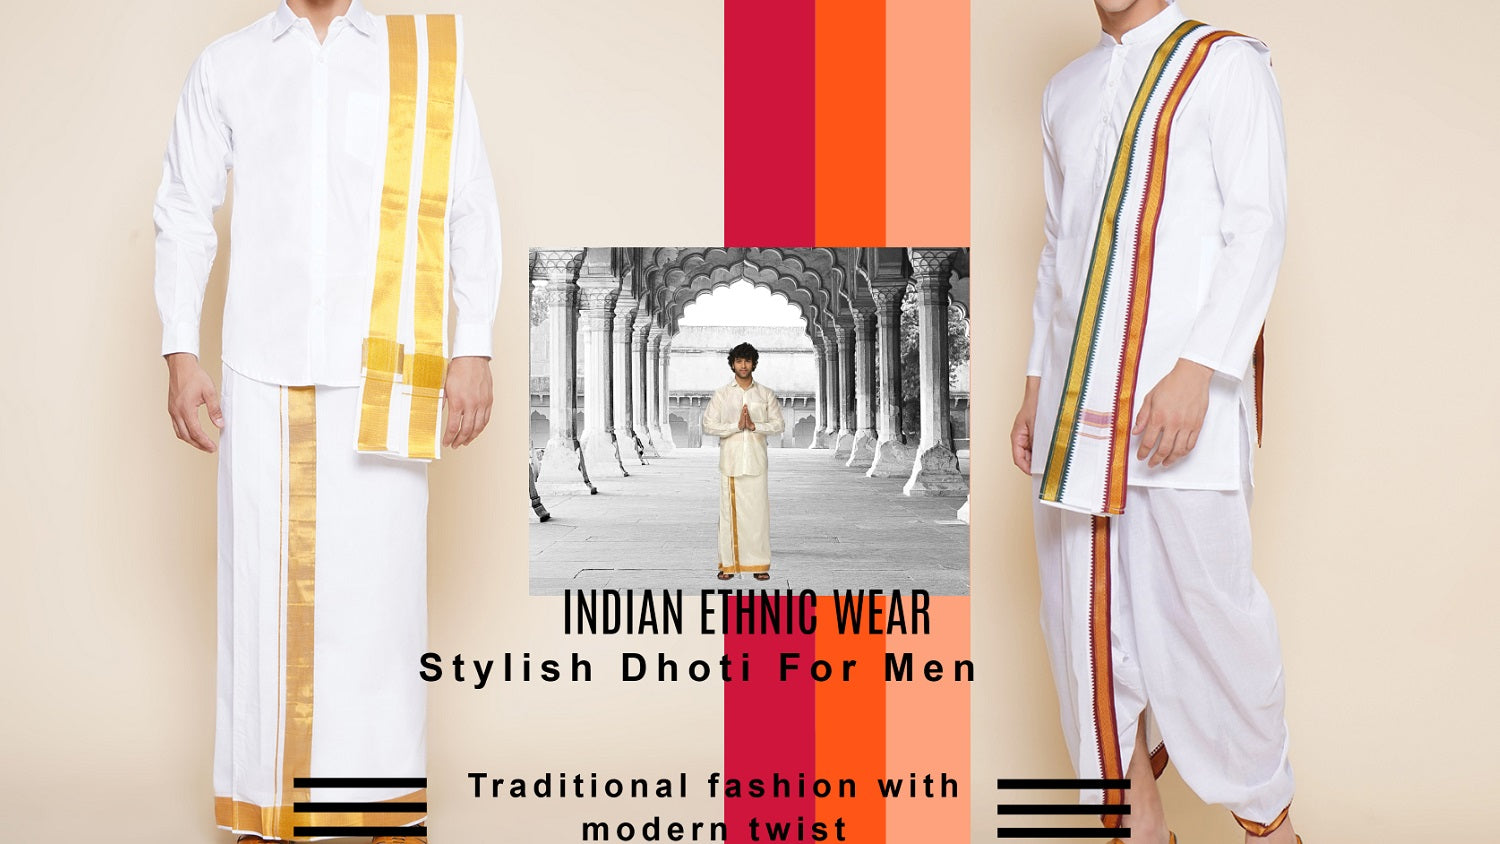 A True Display of Traditional Ethnic Fashion | Utsavpedia